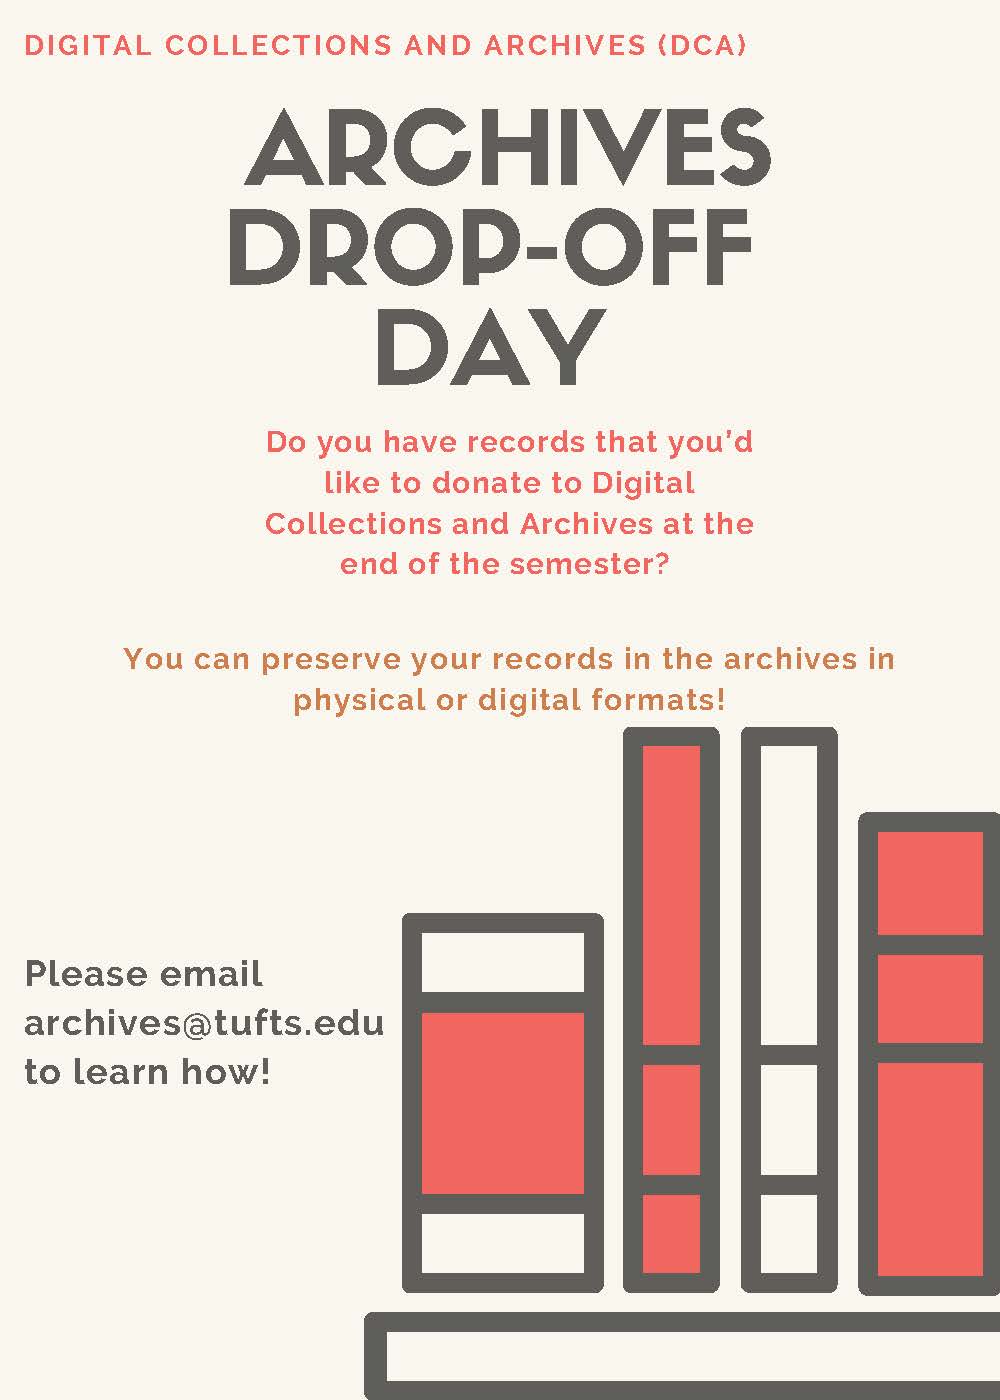 Color flyer describing Archives Drop-Off Day 2020